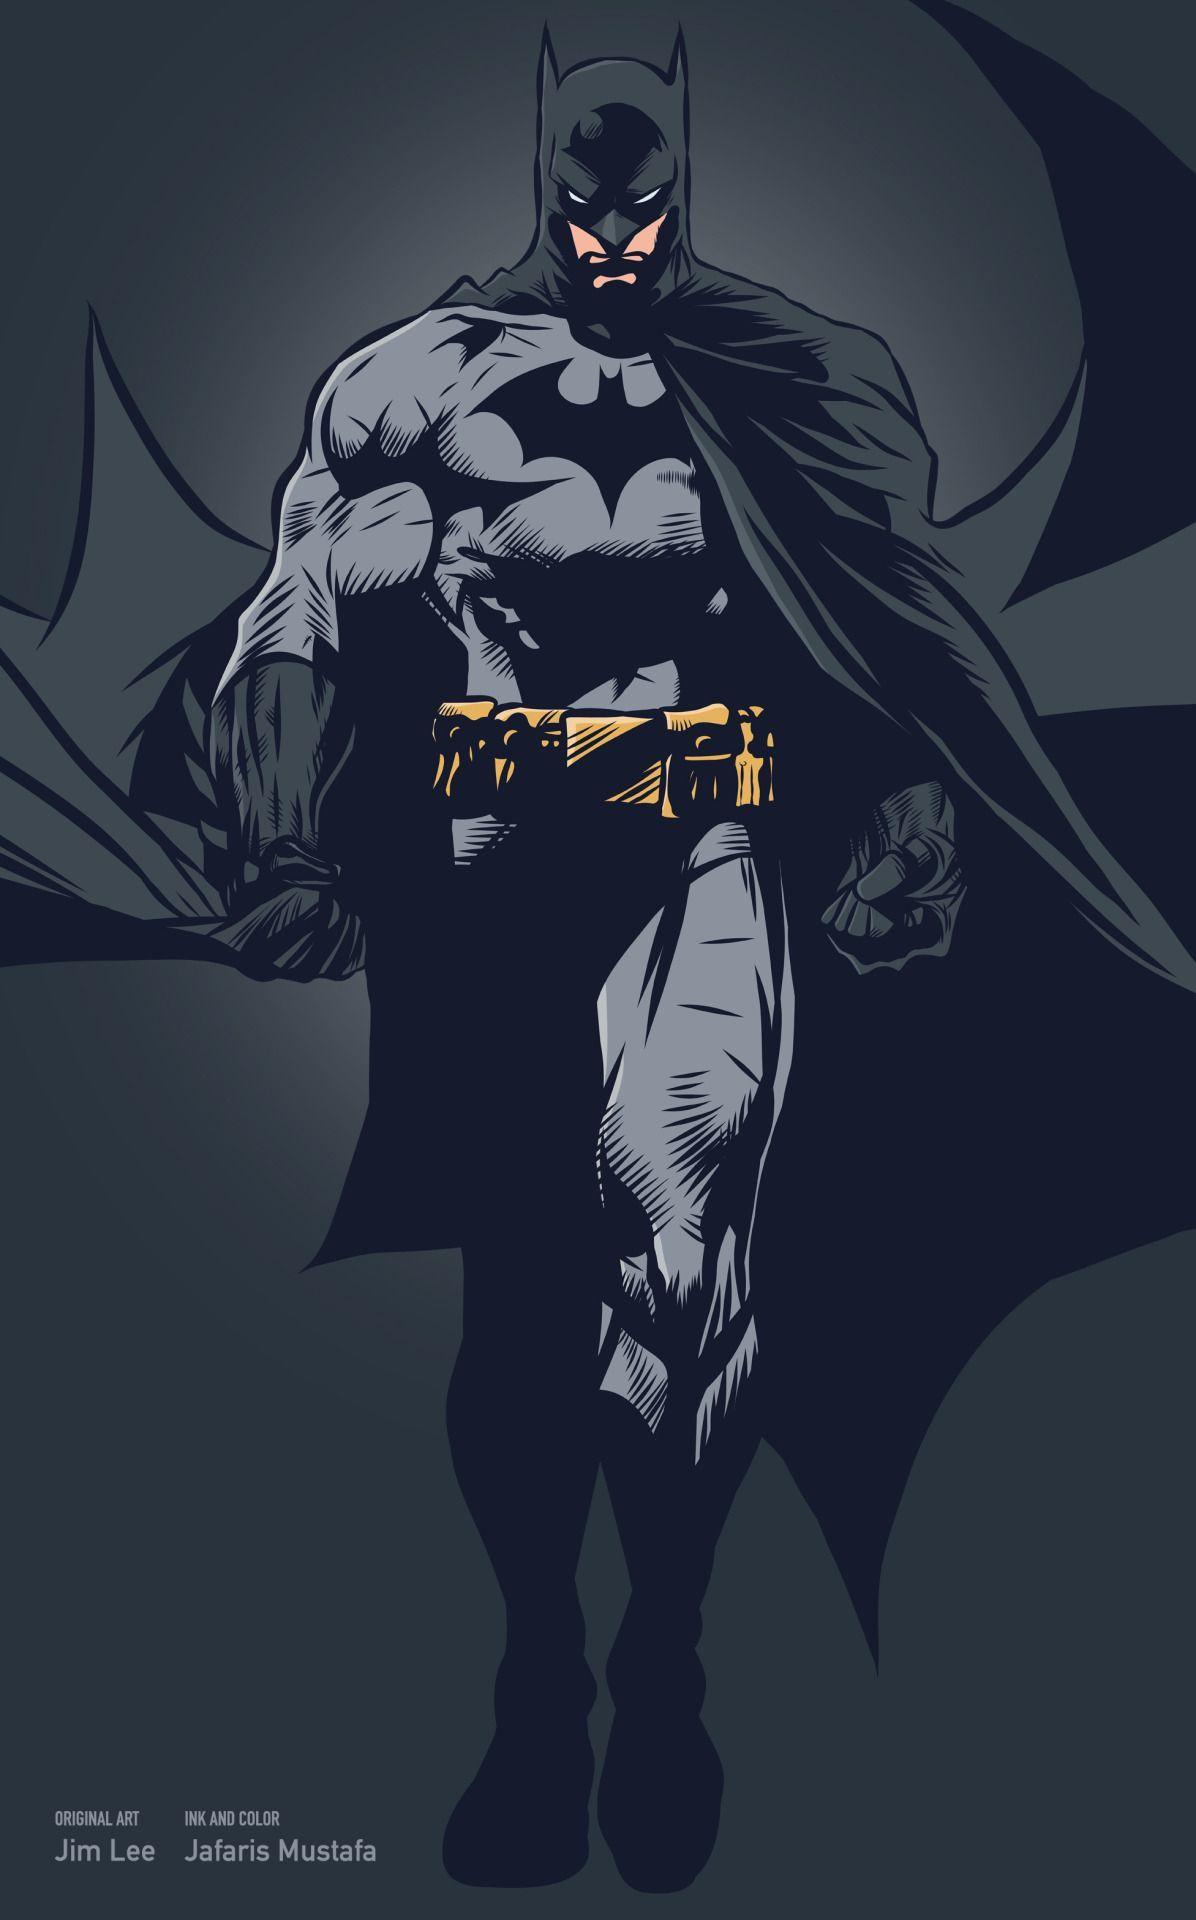 baung: “ Batman (Original art by Jim Lee) made from Adobe Ideas